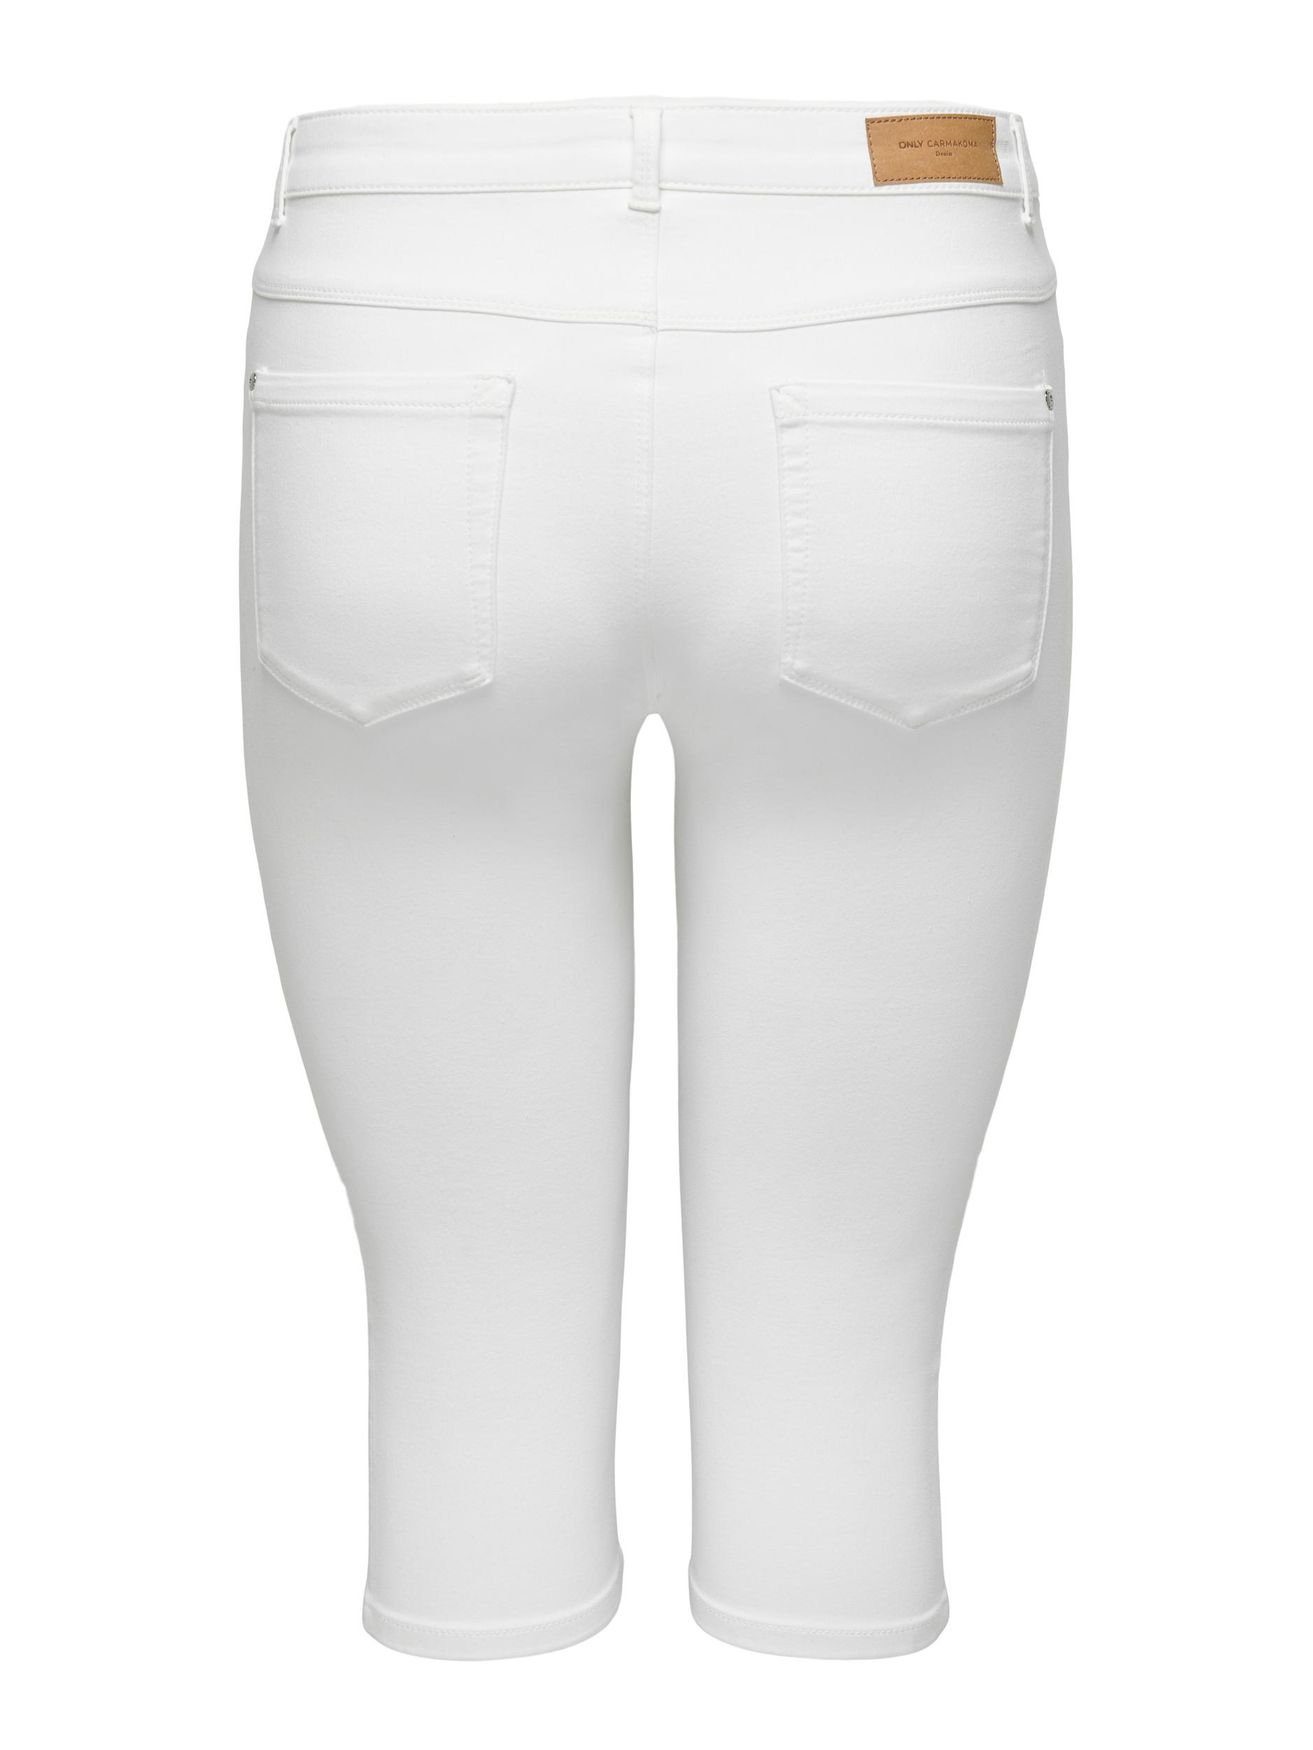 CARMAKOMA Shorts CARAUGUSTA Denim Weiß Stretch Jeans 3/4 ONLY in Capri Hose 4899 Caprihose